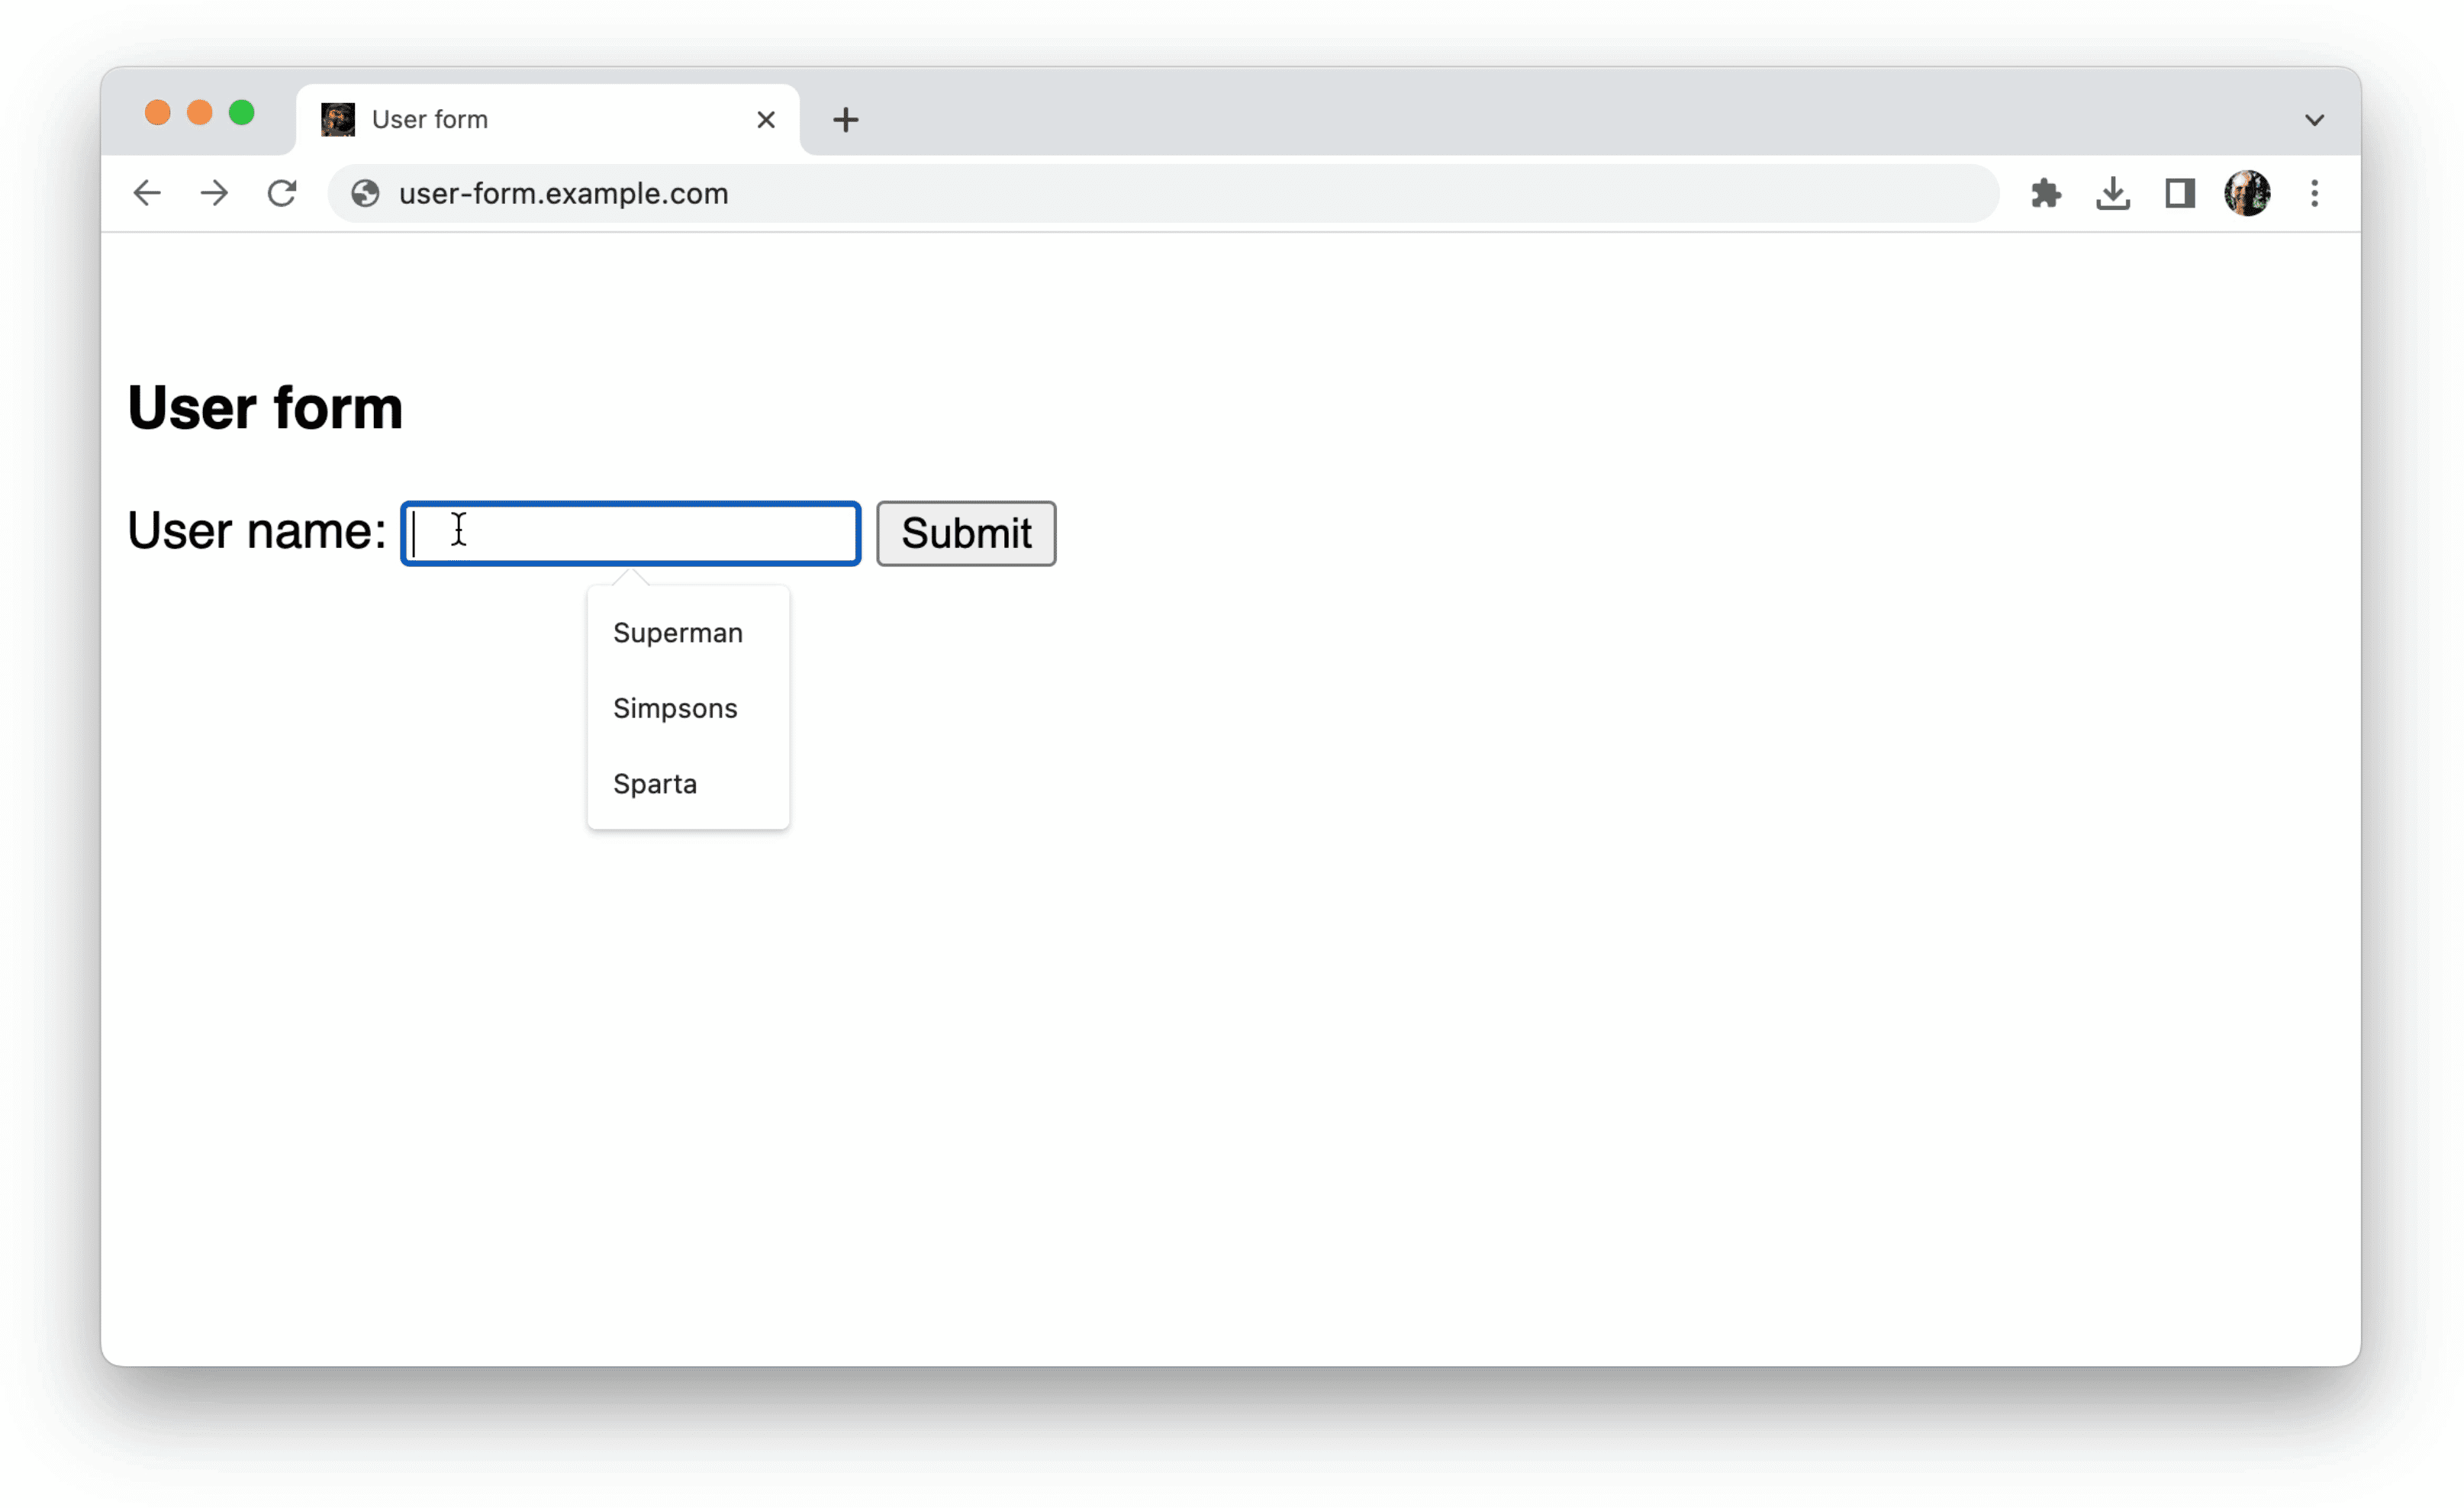 O Chrome oferece sugestões
de dados não estruturados em um único campo de formulário